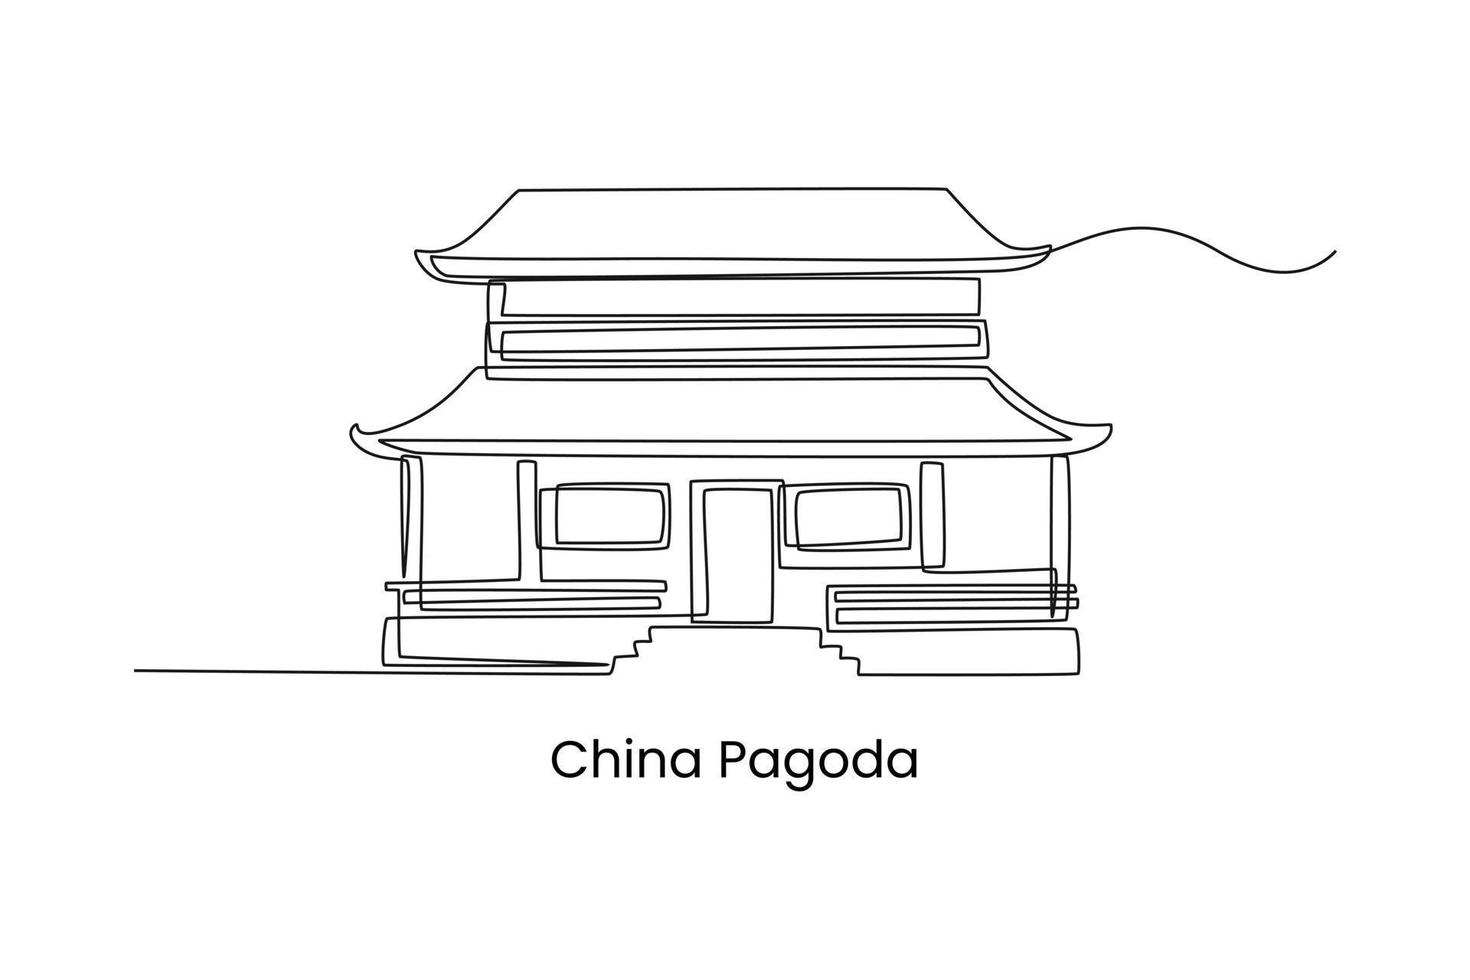 une seule ligne dessinant une maison de pagode en chine. concept de maison traditionnelle. illustration vectorielle graphique de conception de dessin en ligne continue. vecteur